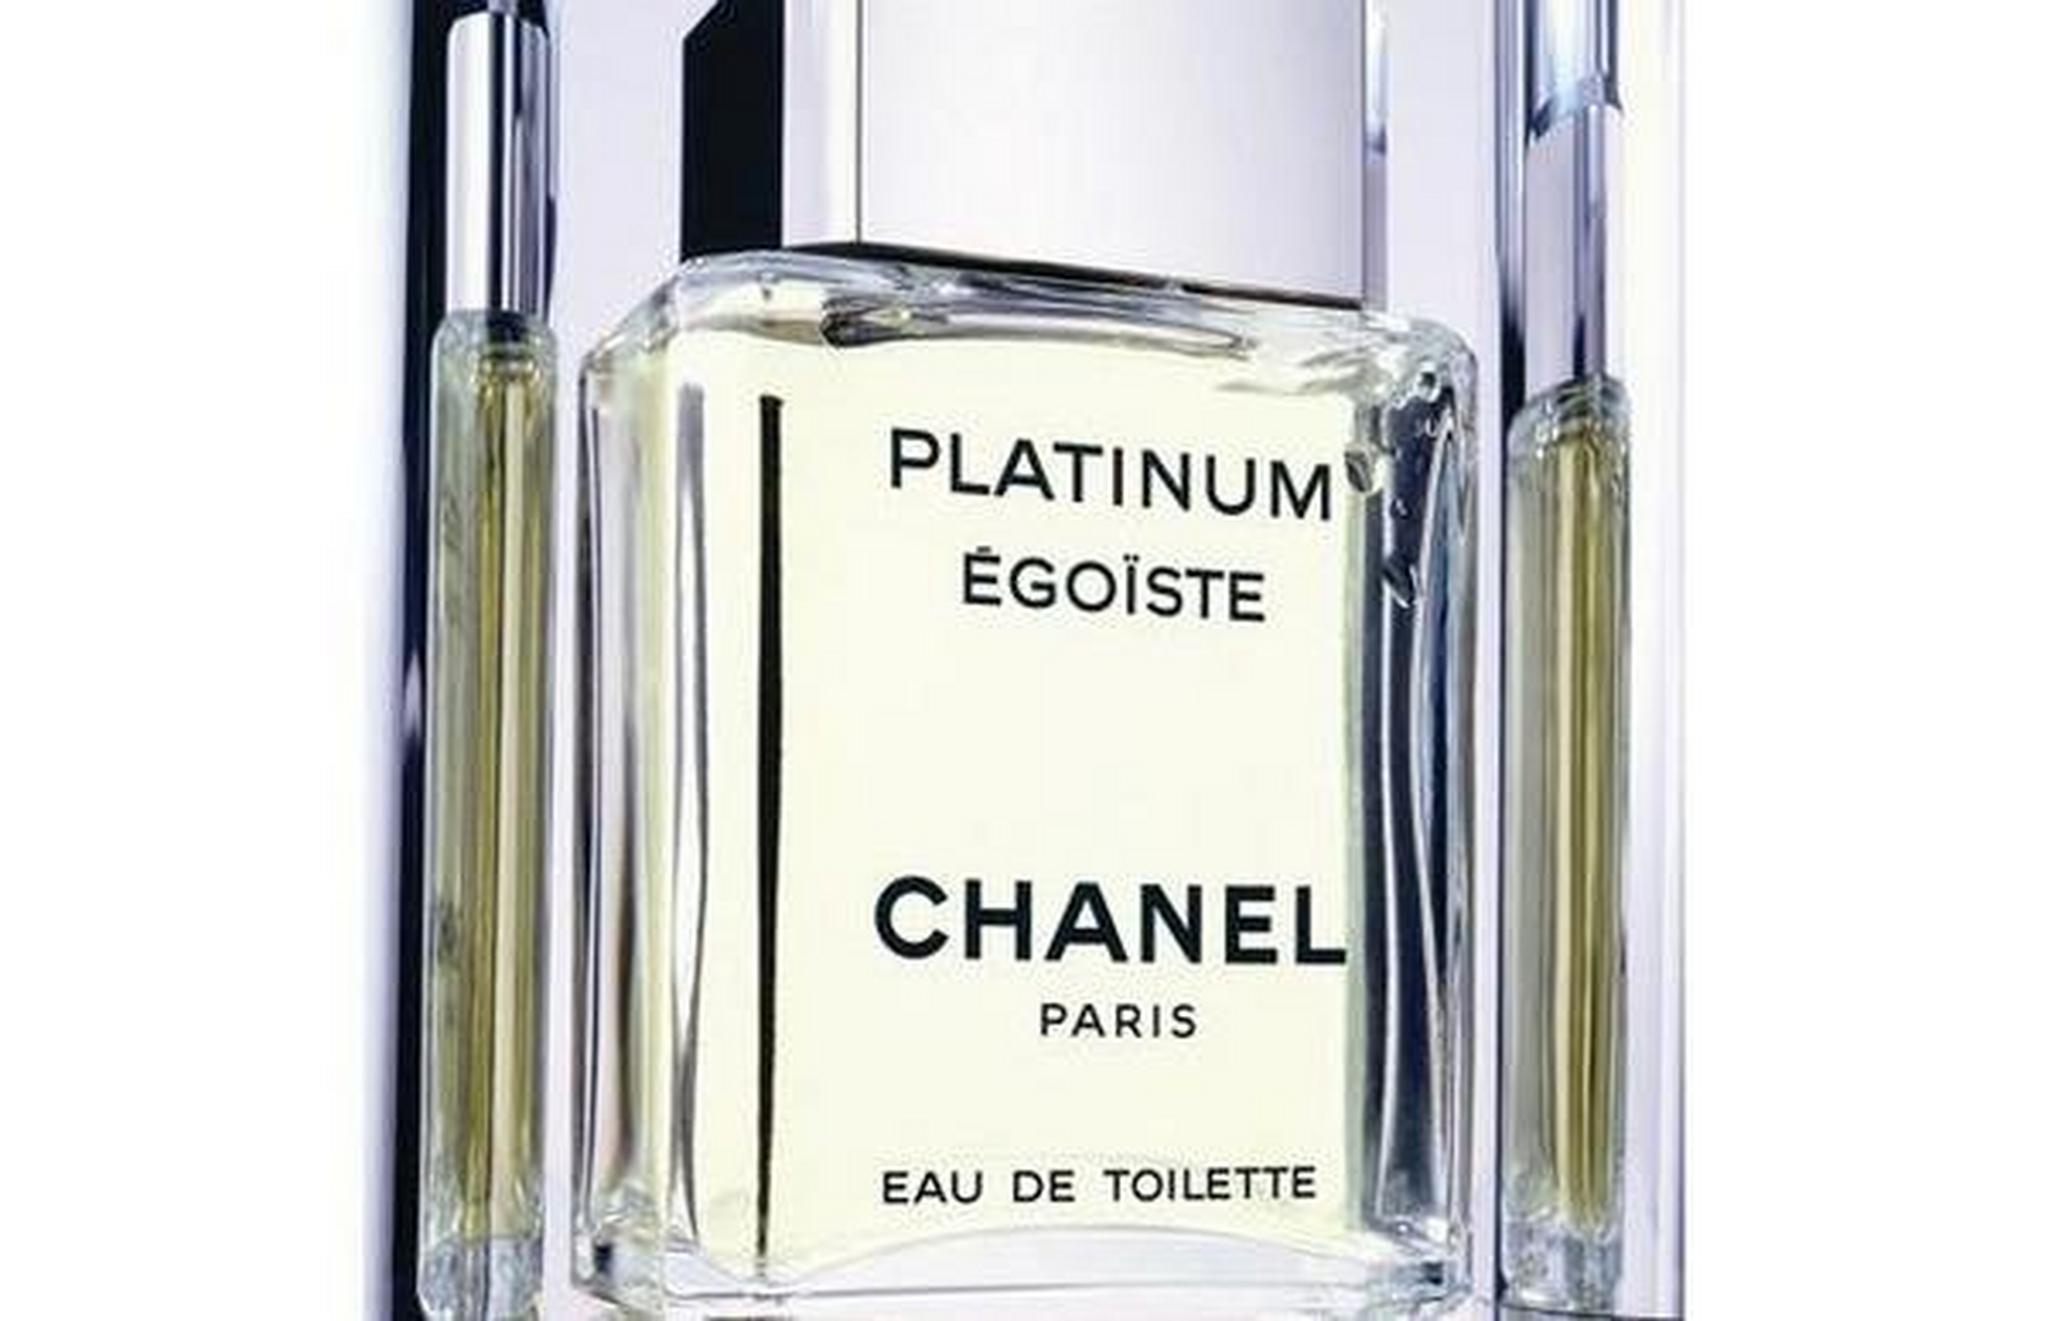 Platinum Egoiste by Chanel for Men 100mL Eau de Toilette